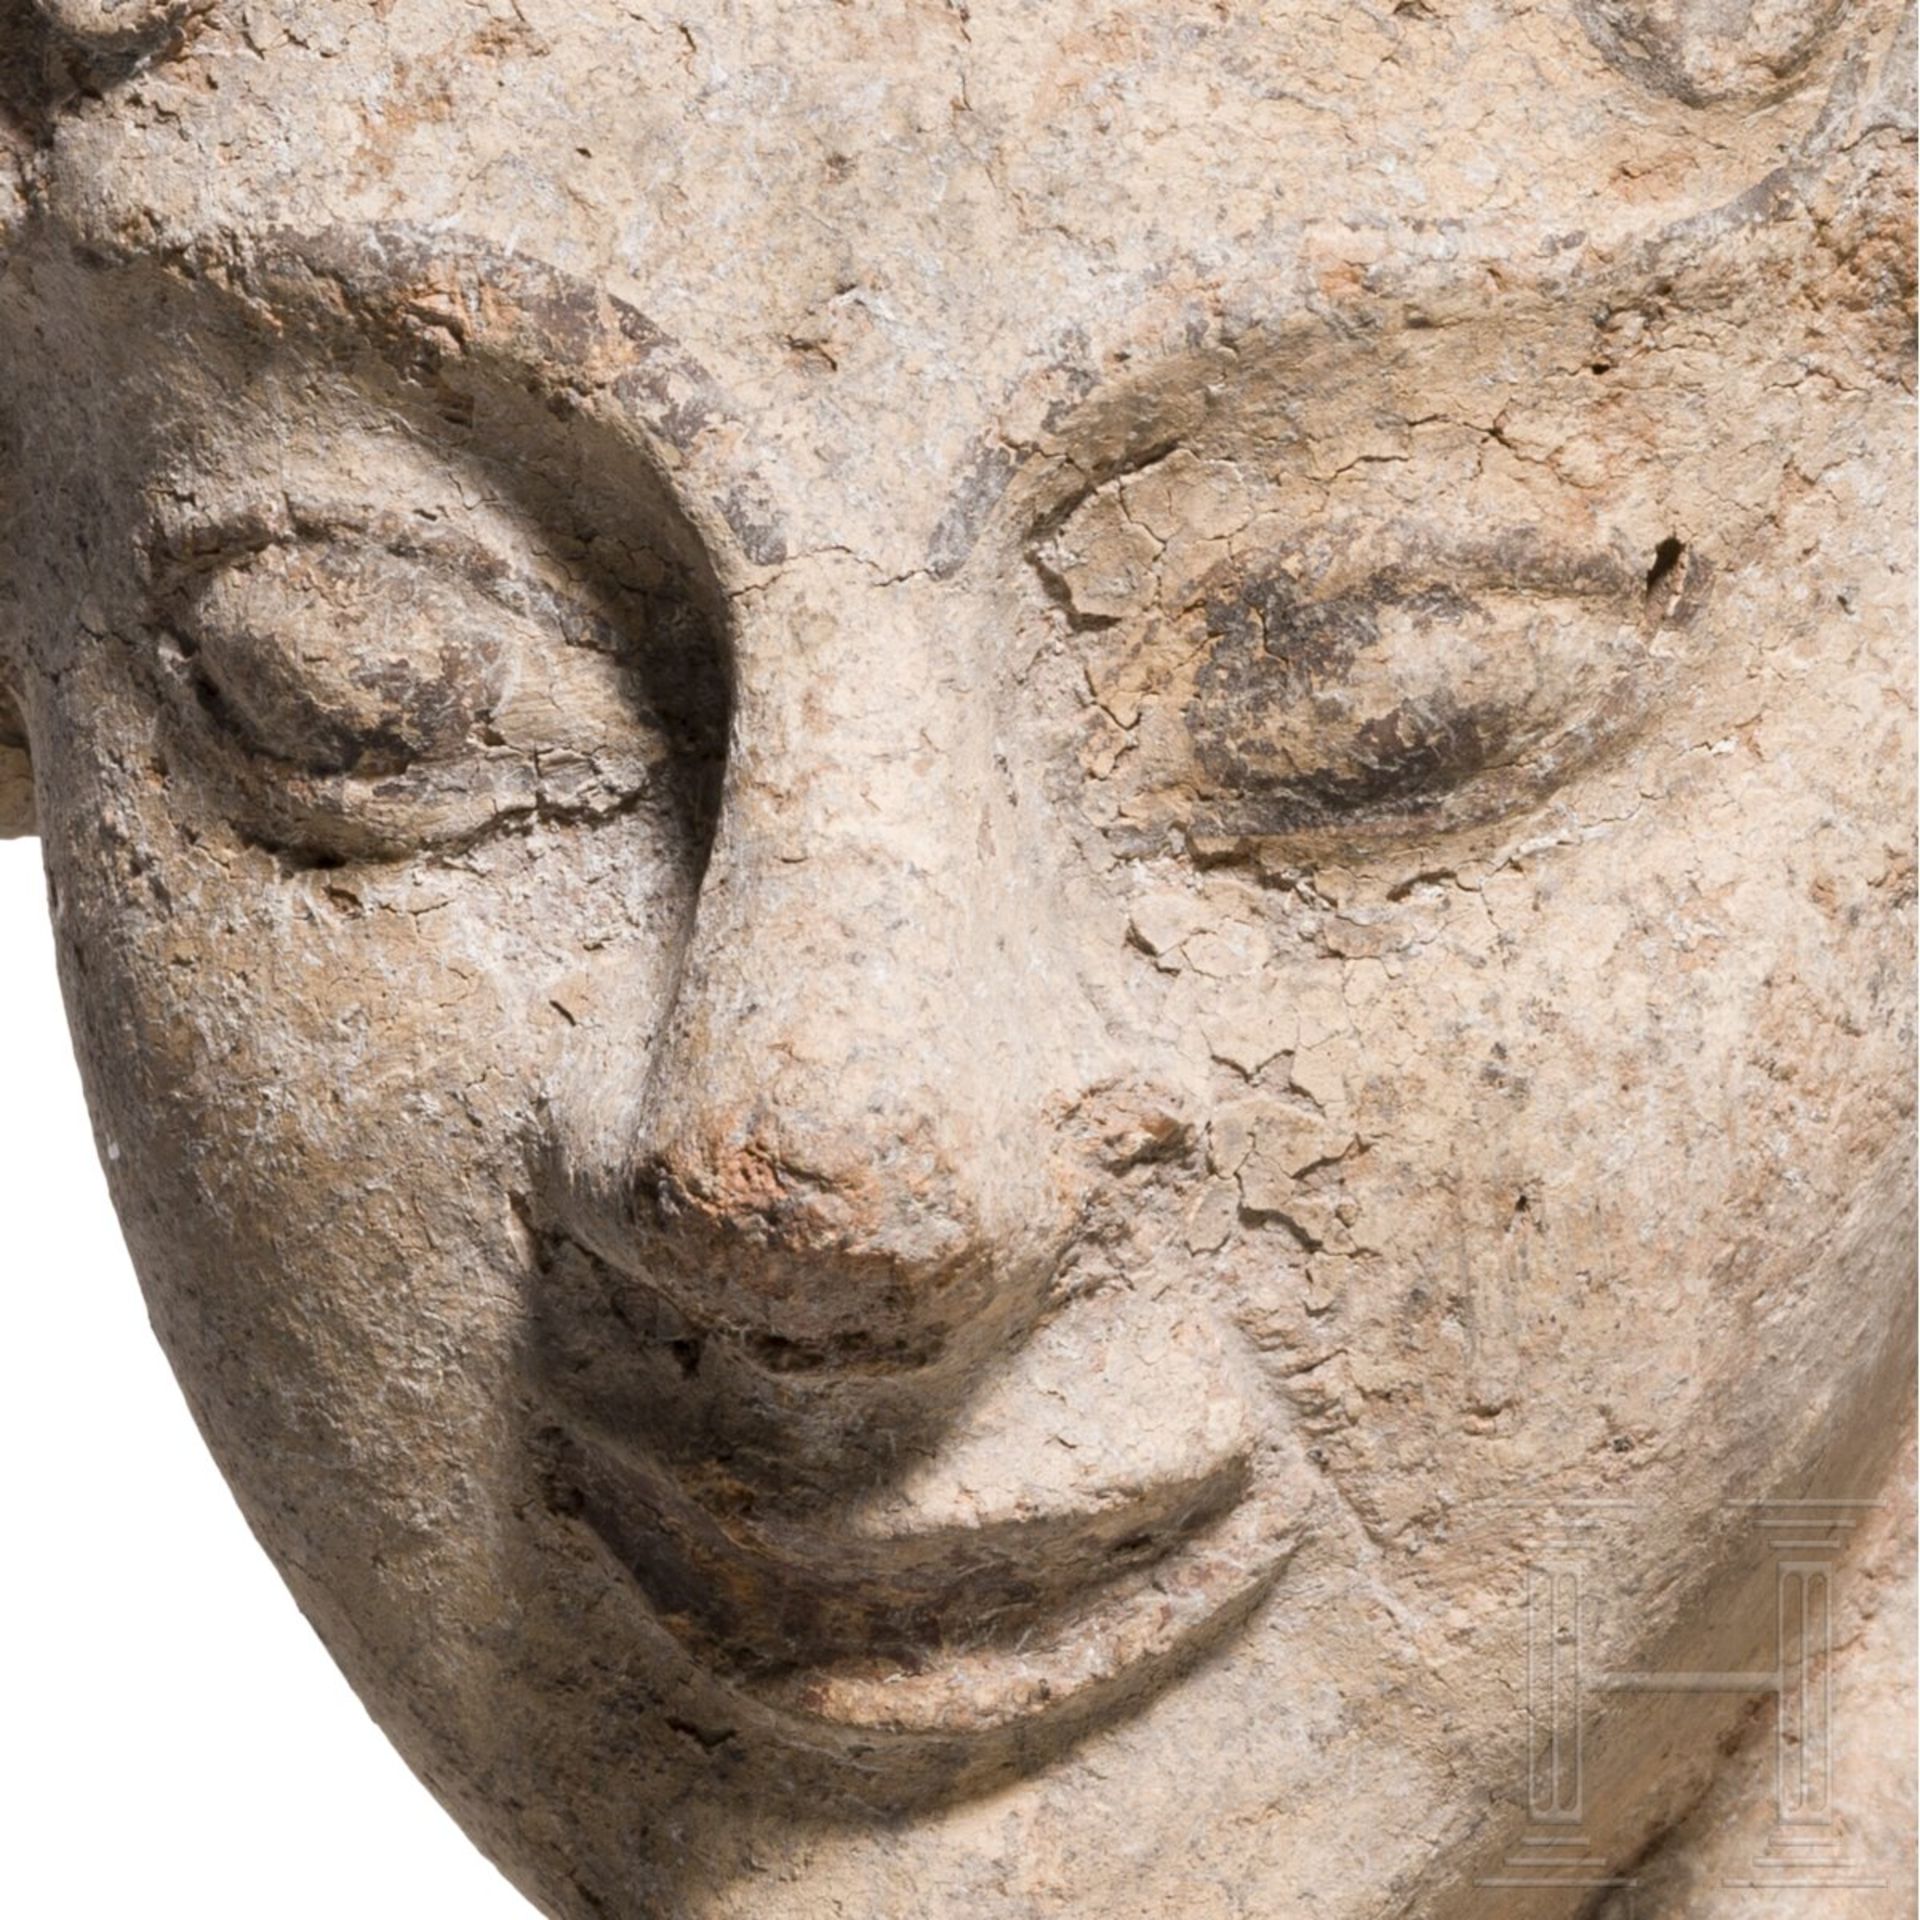 Antefix aus Ton mit Bemalungsresten, etruskisch, spätes 6. Jhdt. v. Chr. - Image 5 of 5